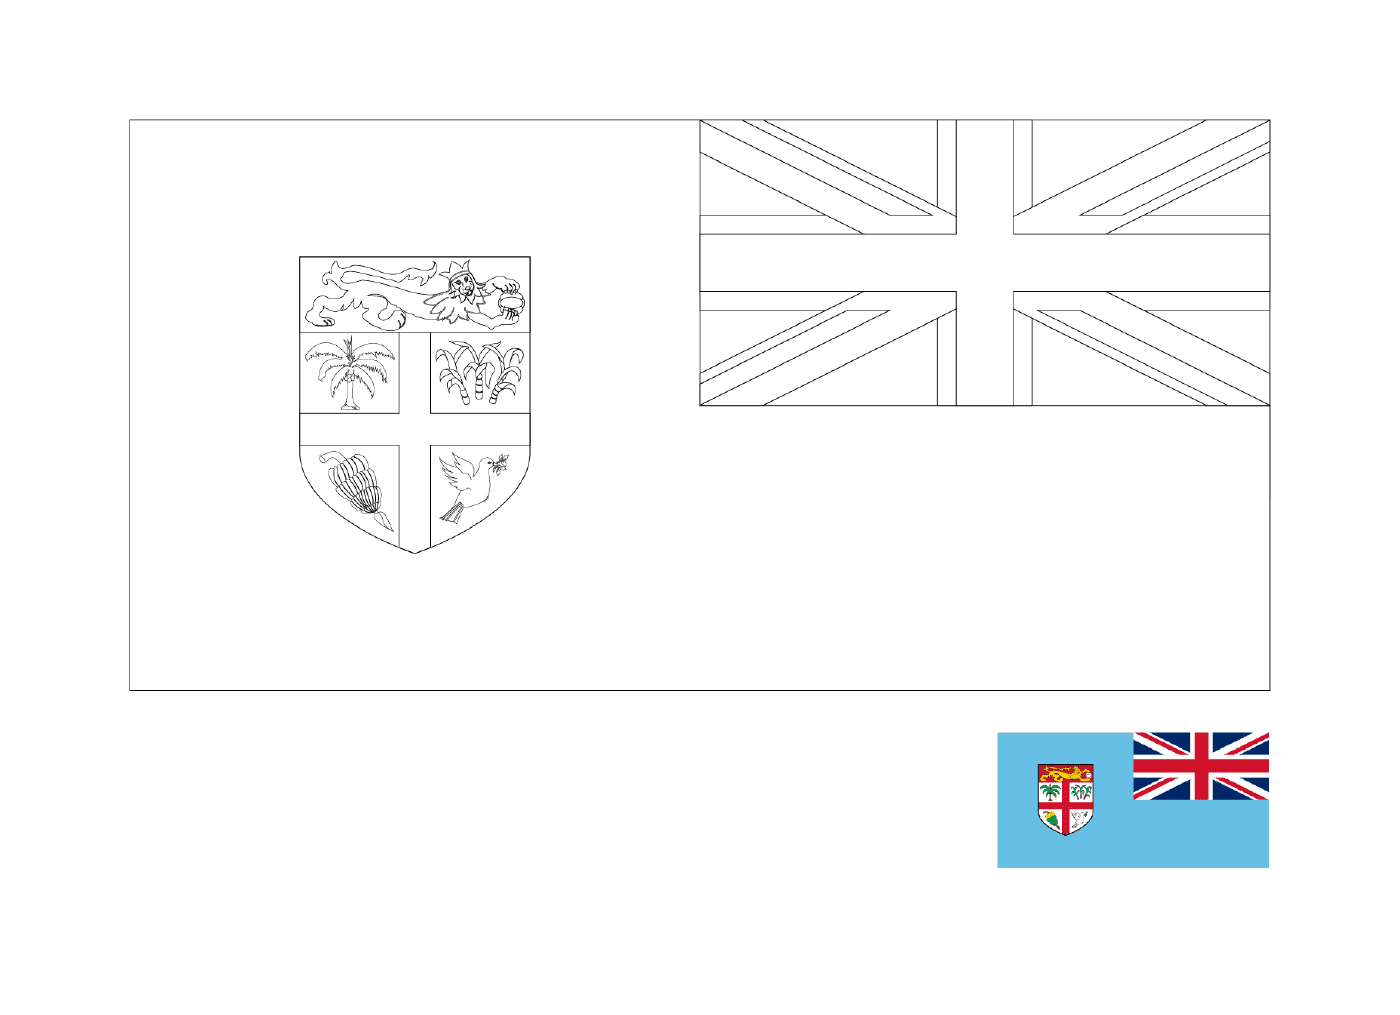  علم جزر فرجن البريطانية 